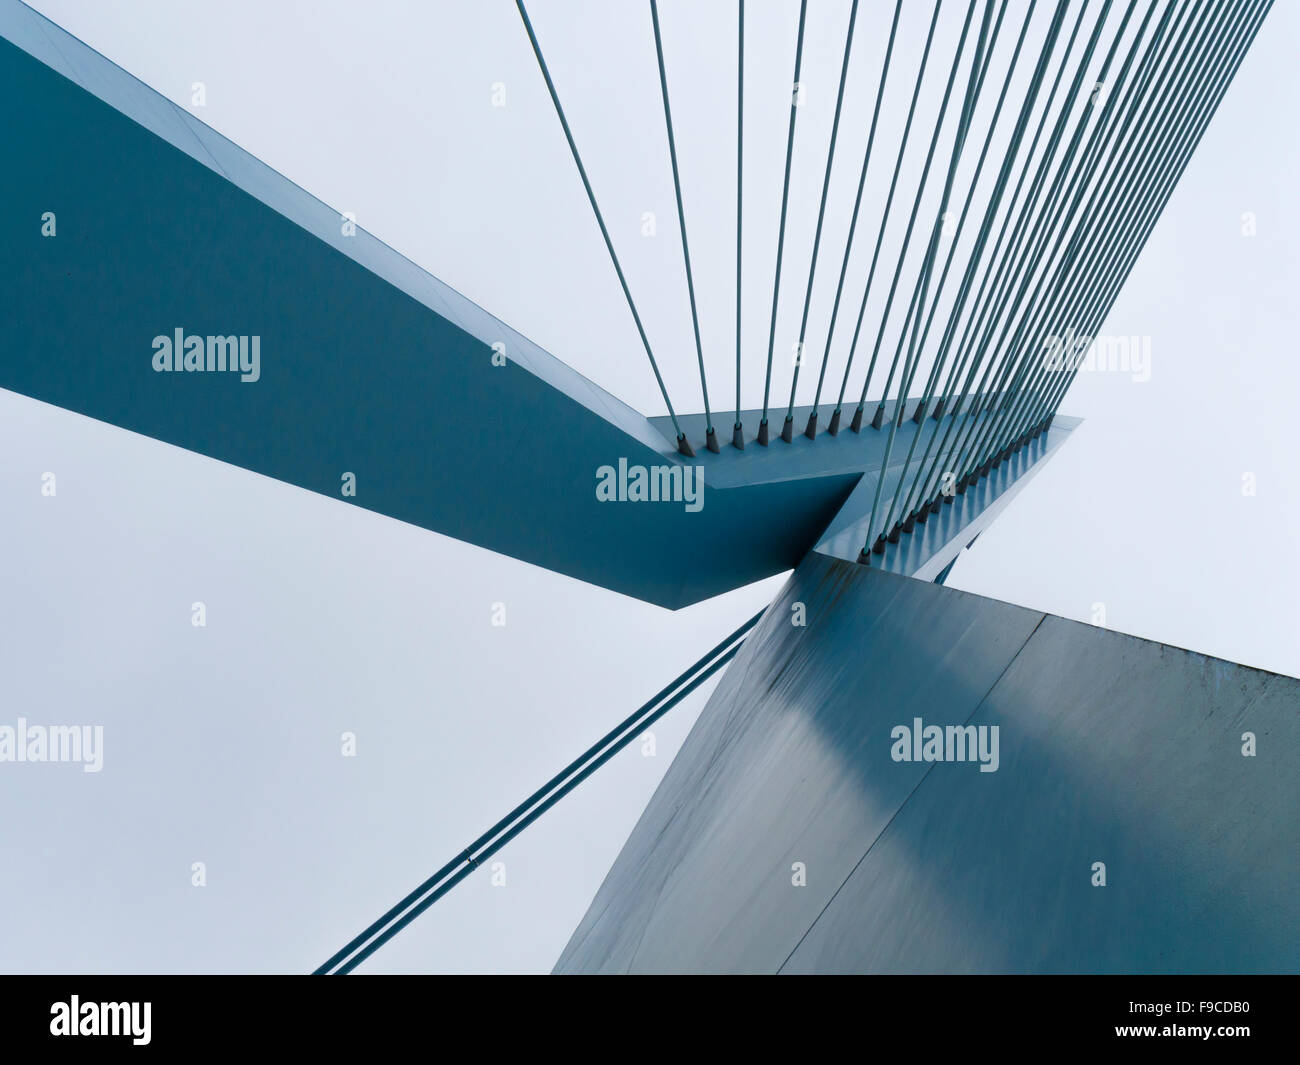 Stahl-Pylon "De Zwaan" und Stahlseilen der Erasmusbrücke in Rotterdam, Niederlande (Erasmusbrücke). Stockfoto